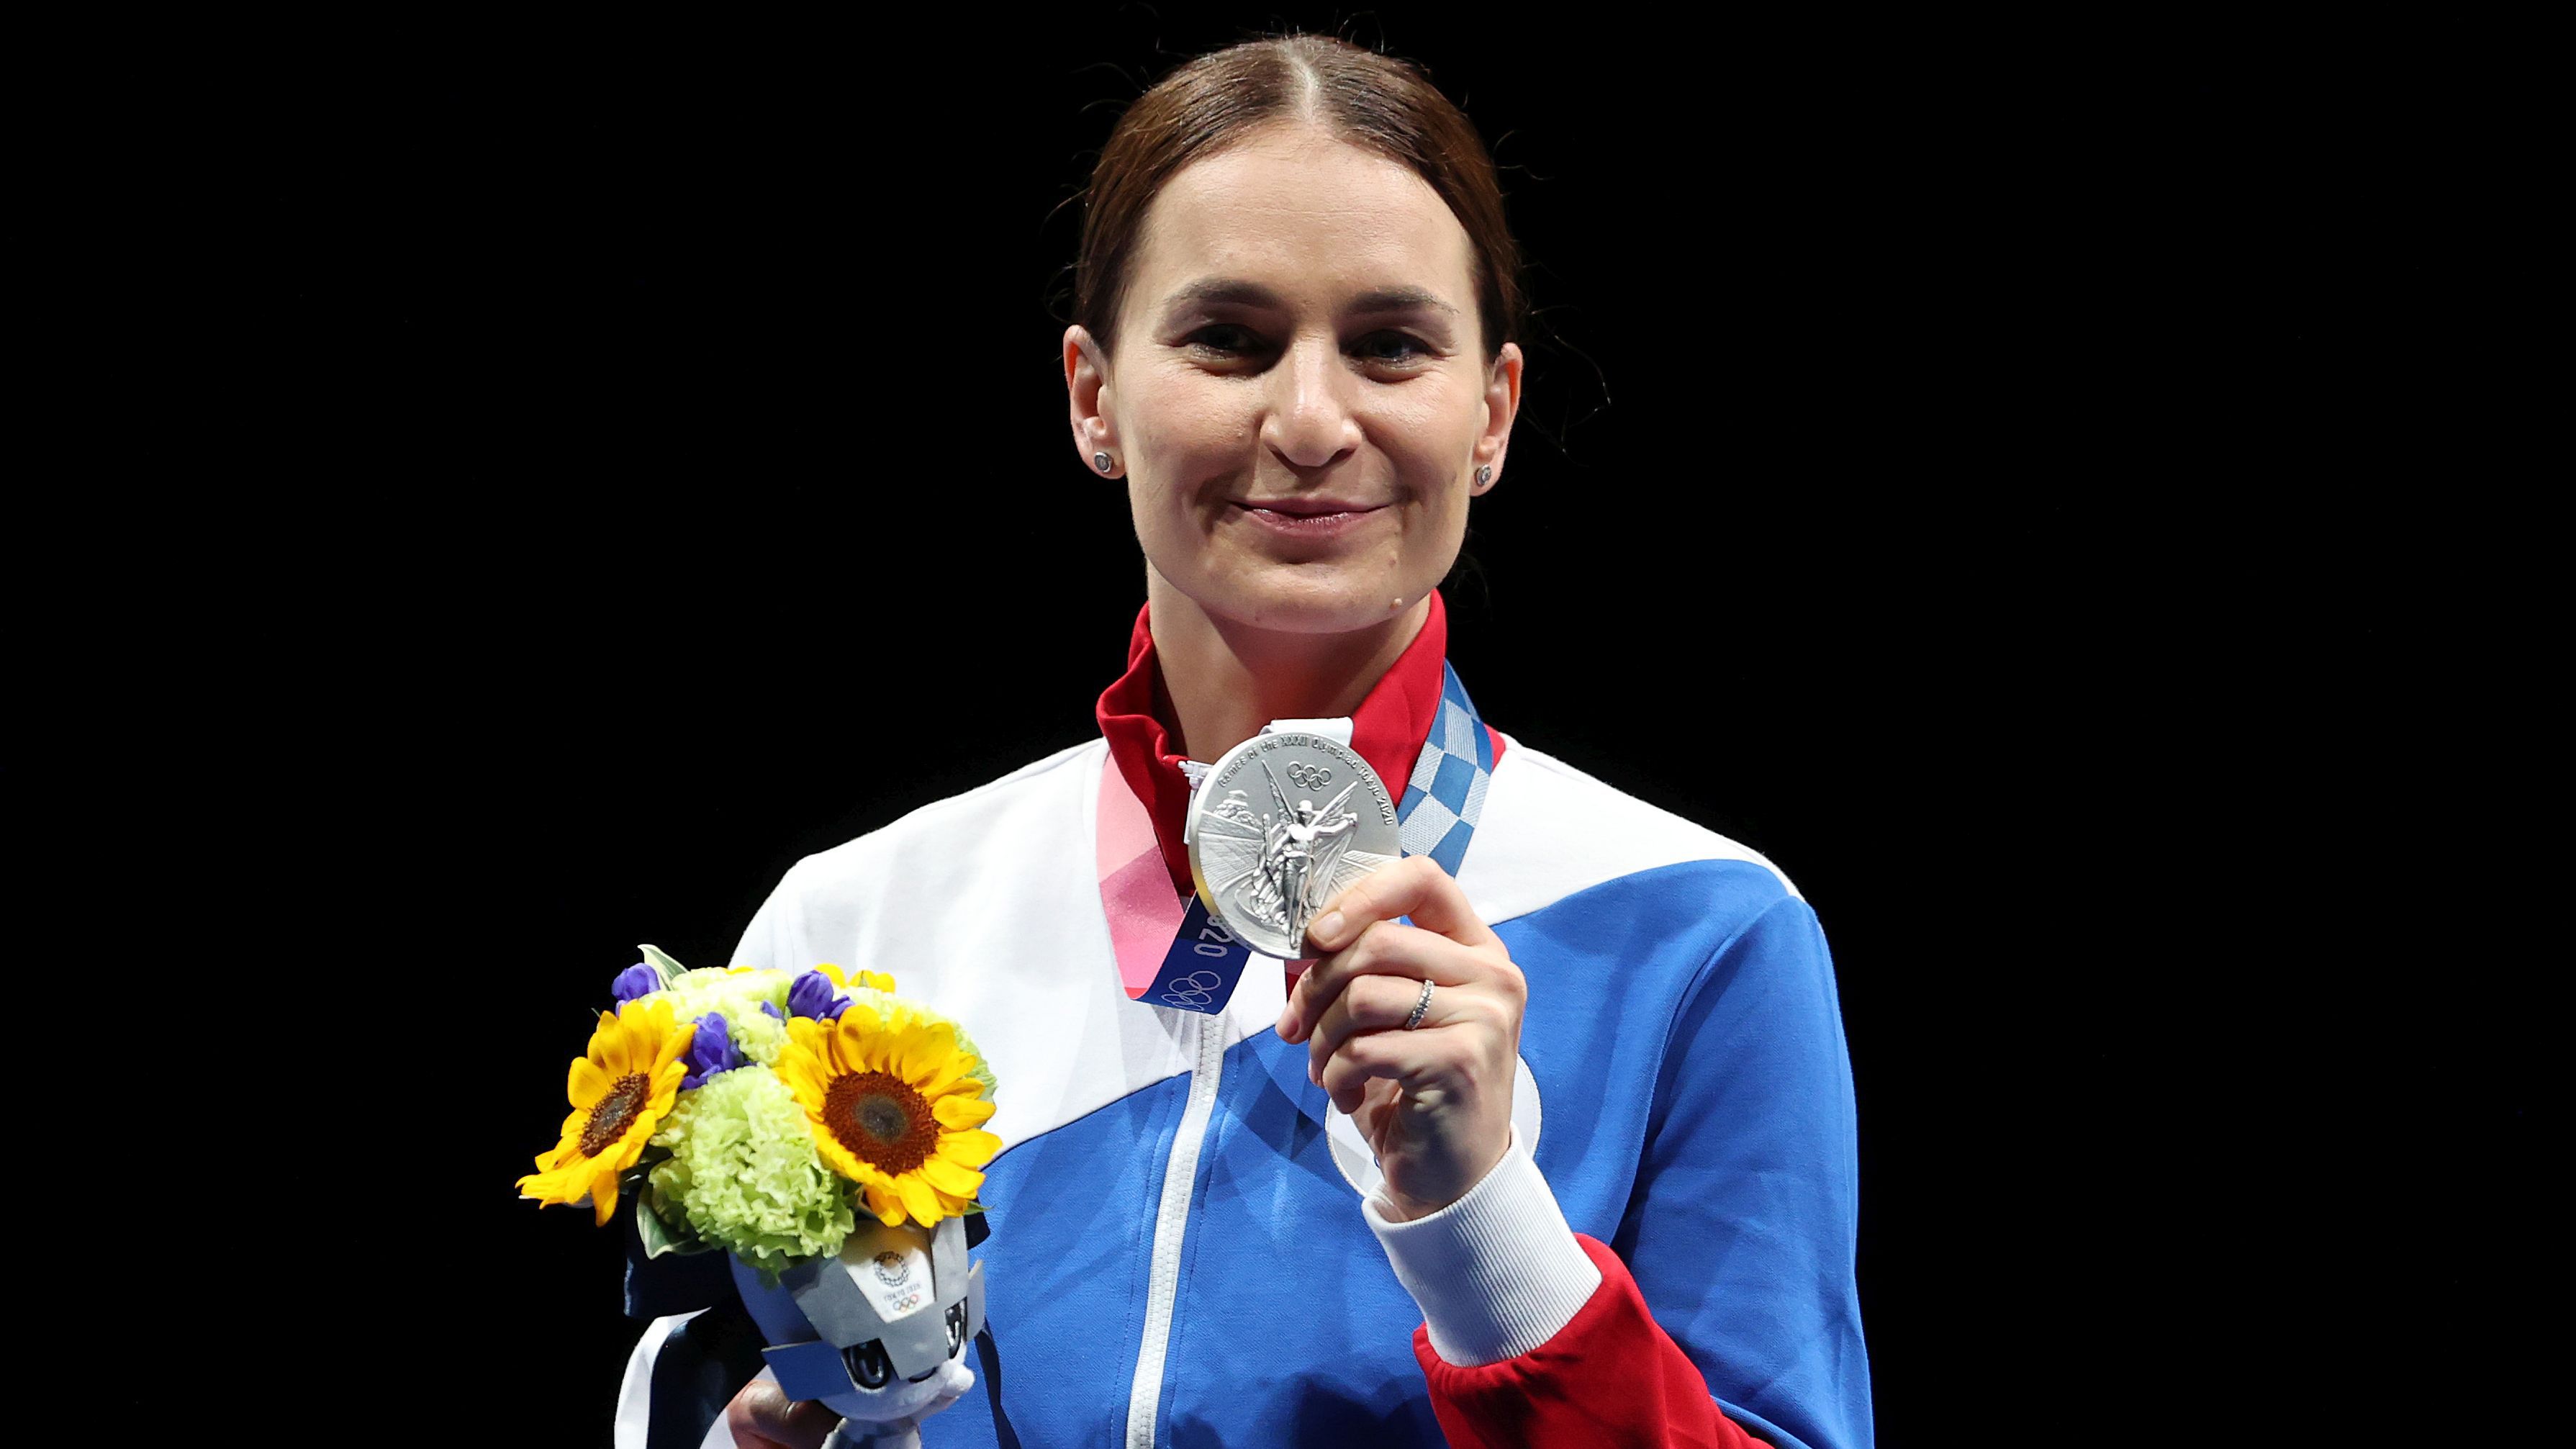 Velikaja eddig öt olimpiai érmet szerzett pályafutása során (fotó: Getty Images)